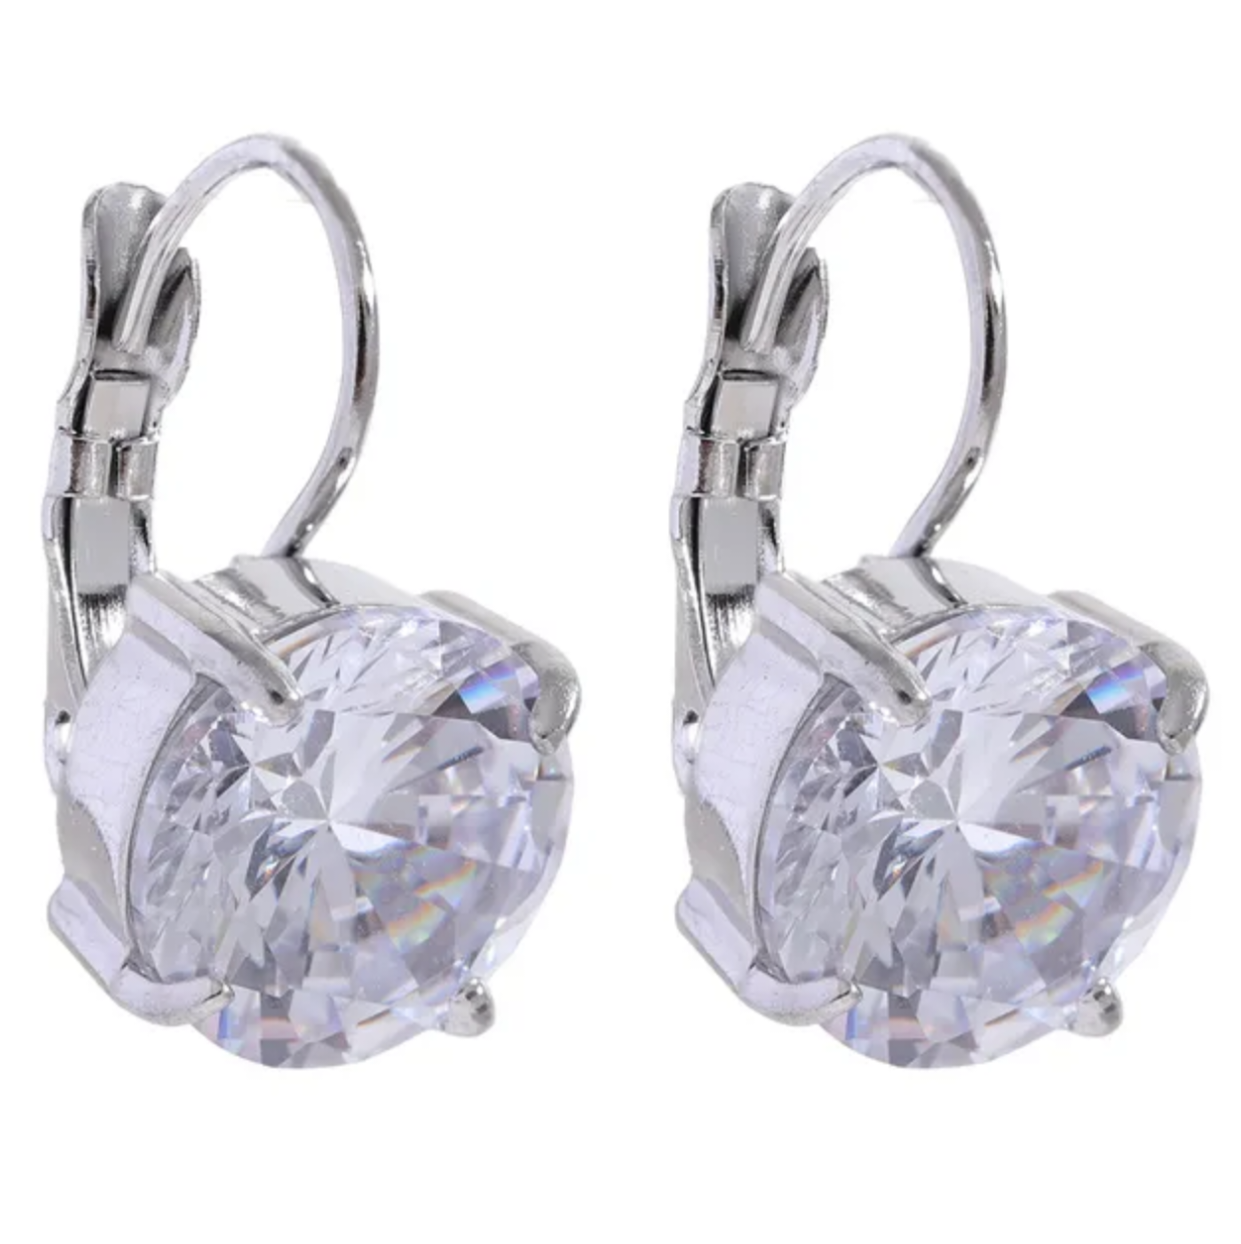 ROBYN - Luxury Square drop earring Diamond Ear Candy Huggie Hoop Earrings